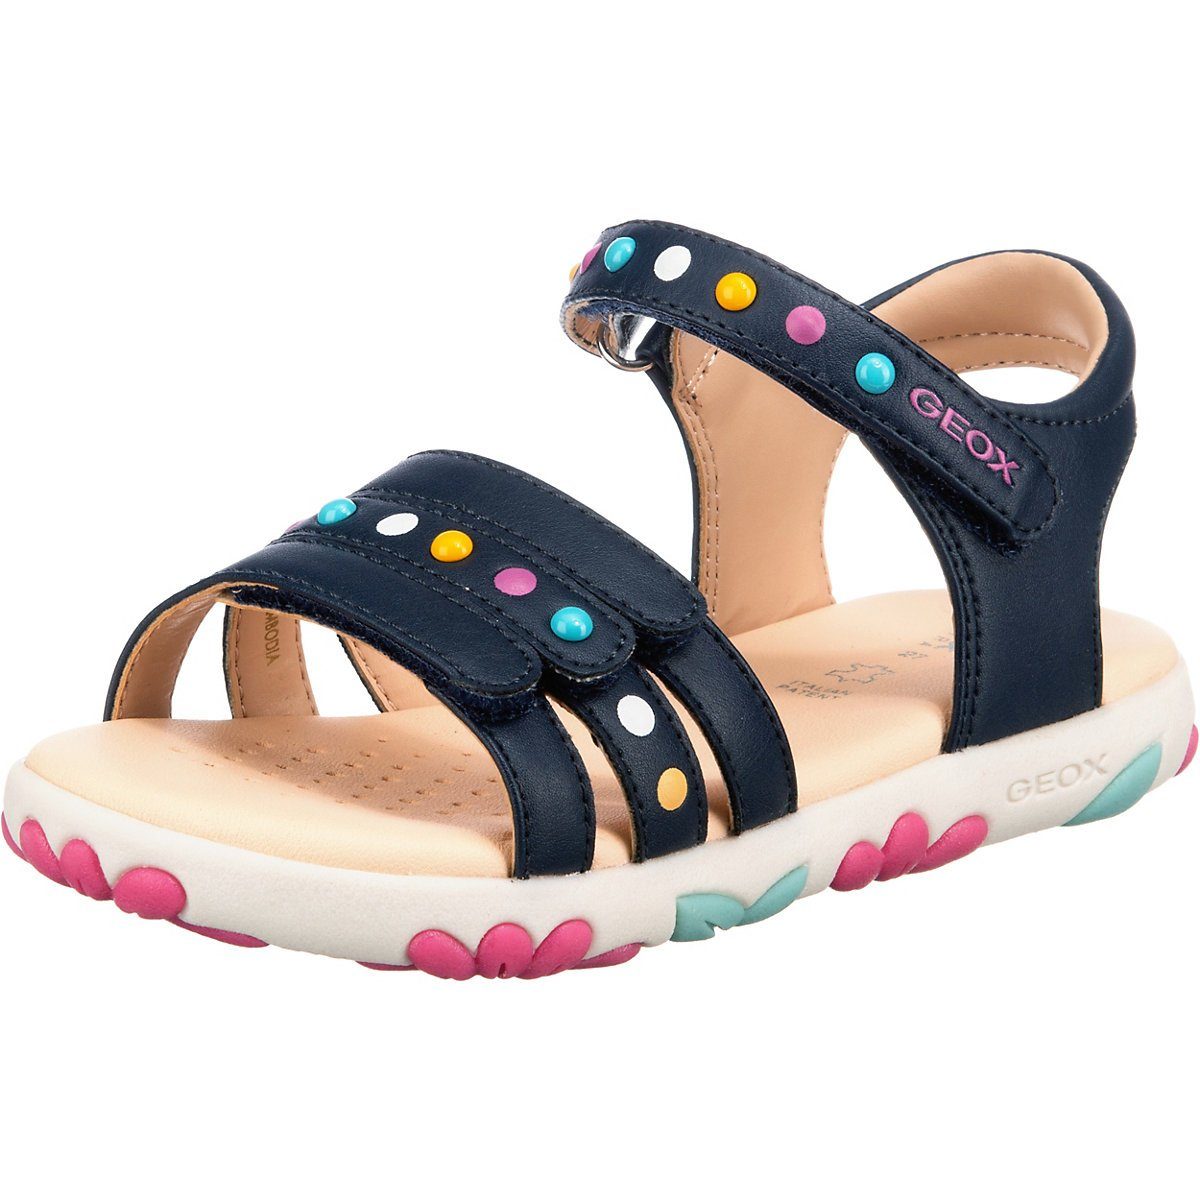 Geox »Sandalen HAITI für Mädchen« Sandale kaufen | OTTO